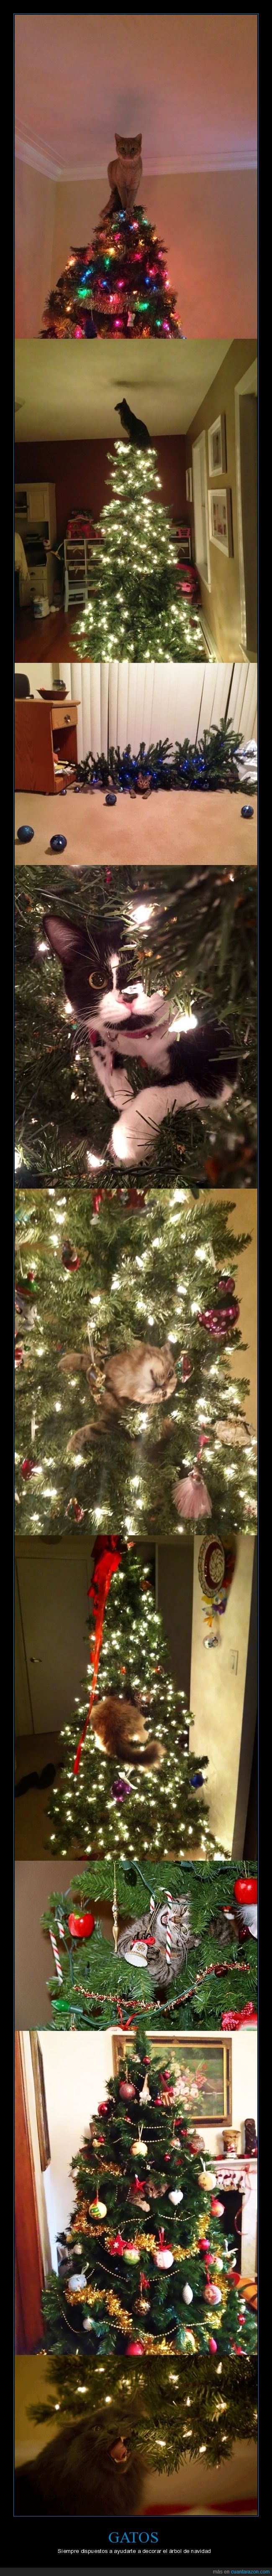 gatos,árboles de navidad,navidad